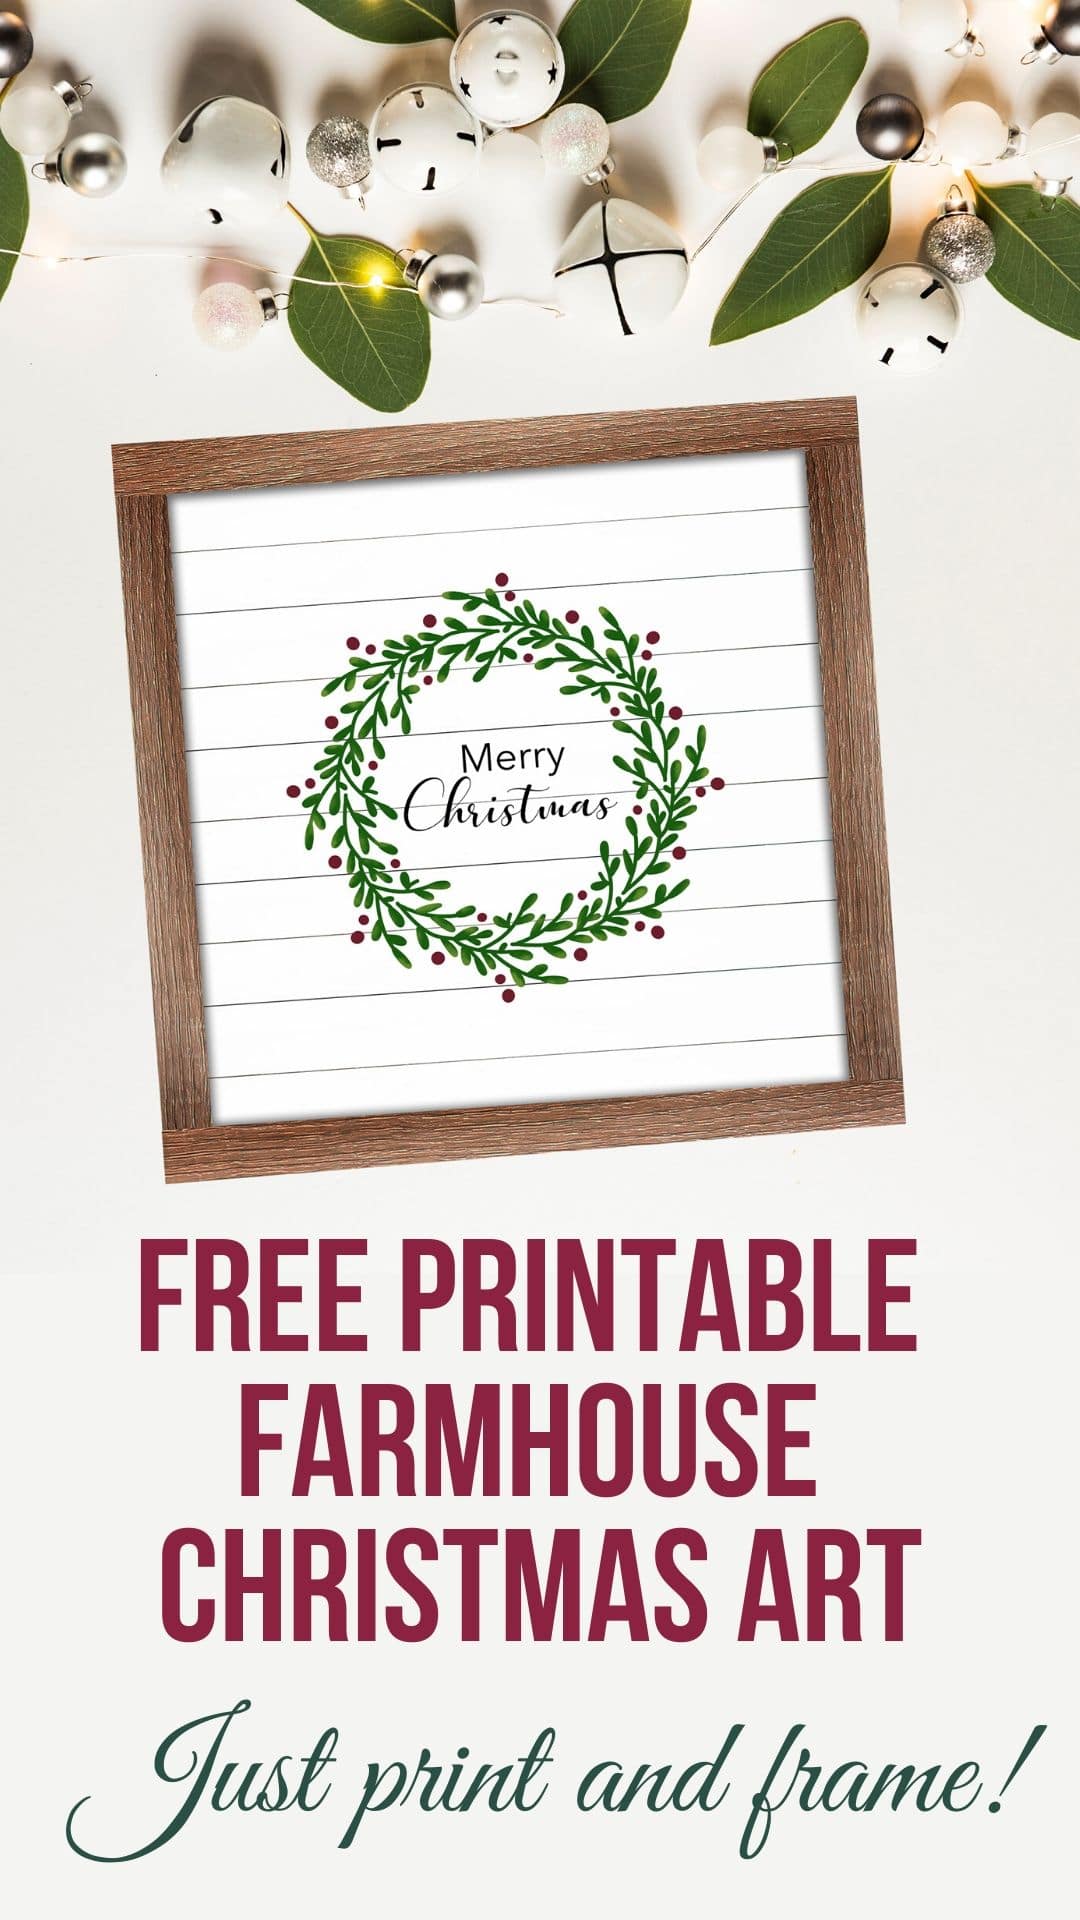 Free Printable Farmhouse Christmas Art via @brookeberry